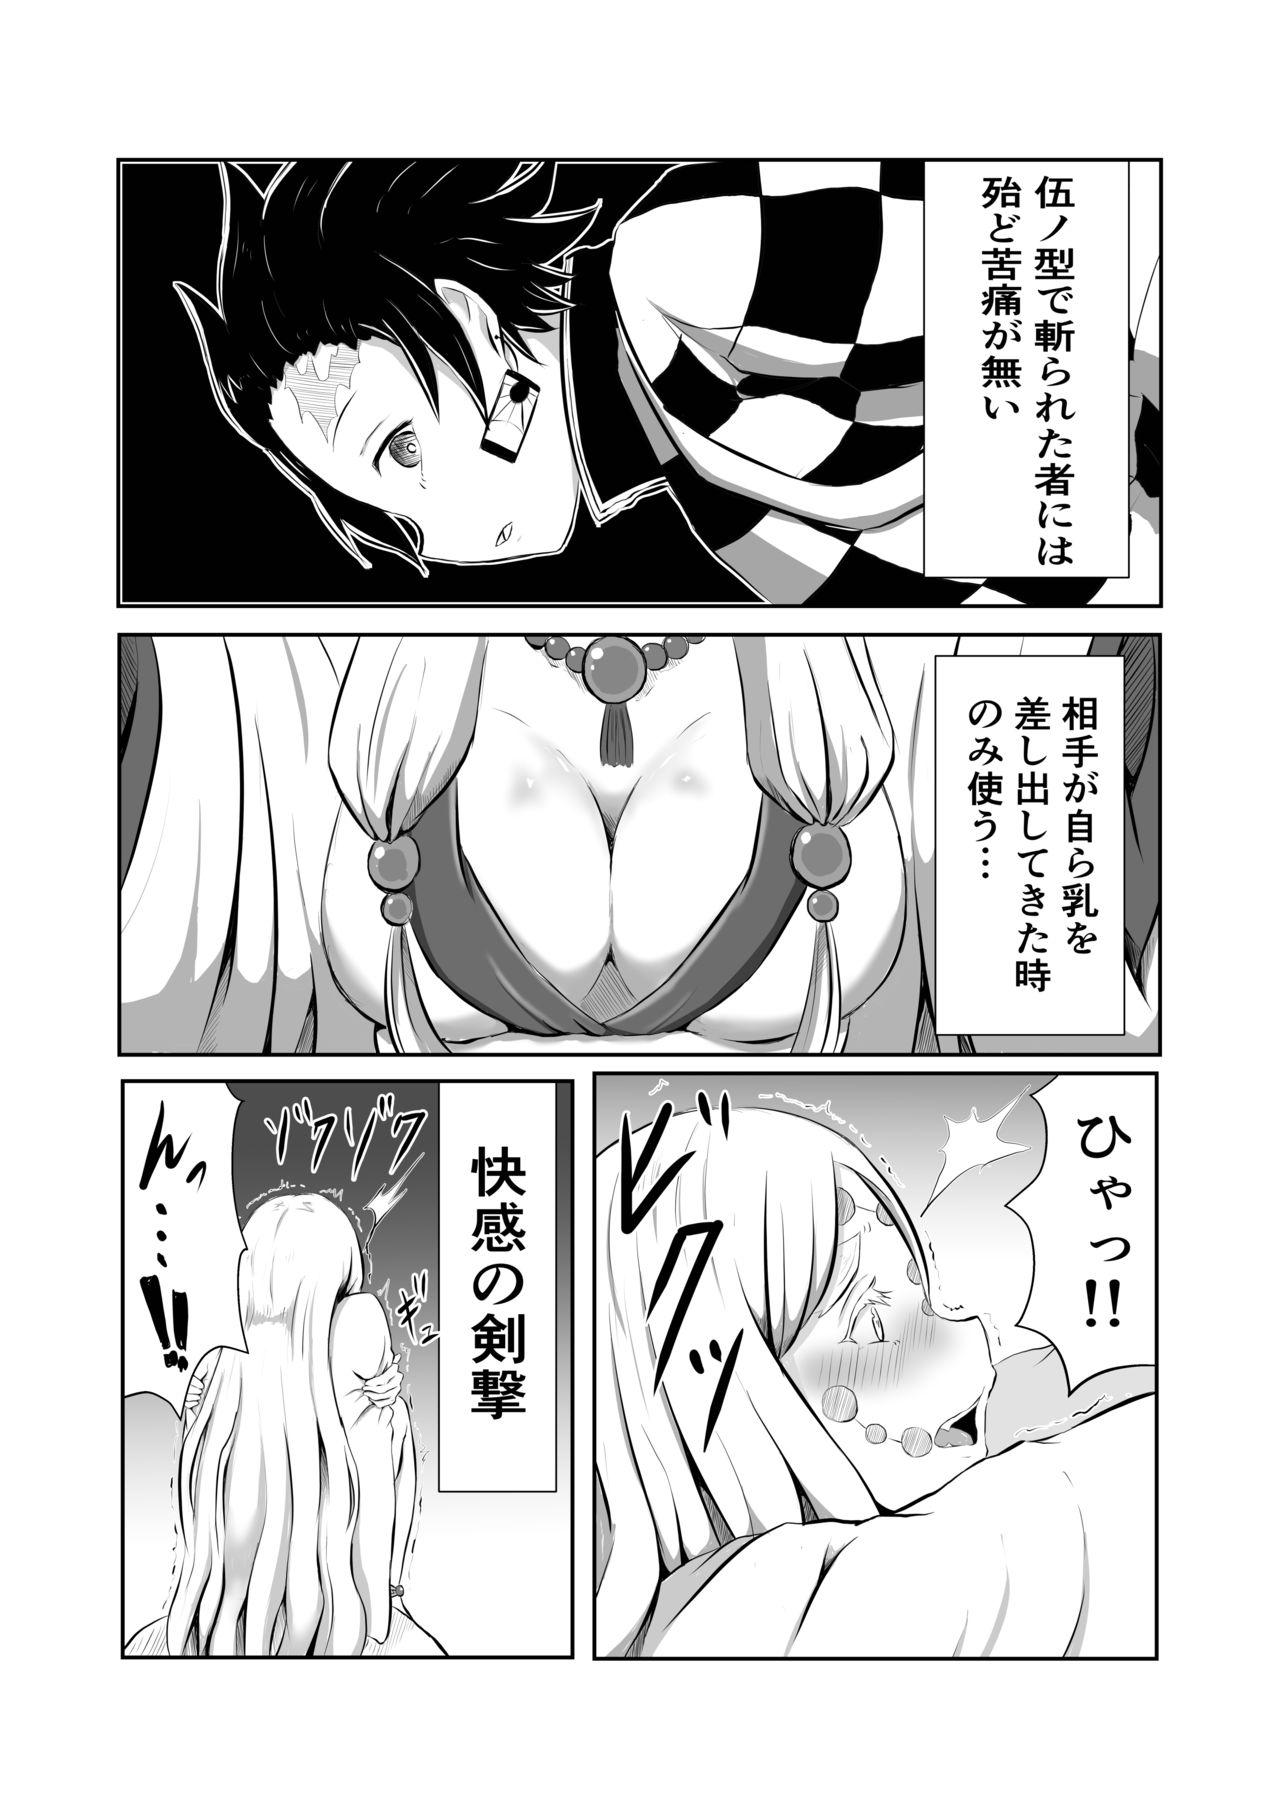 Home Hinokami Sex. - Kimetsu no yaiba | demon slayer Homemade - Page 4